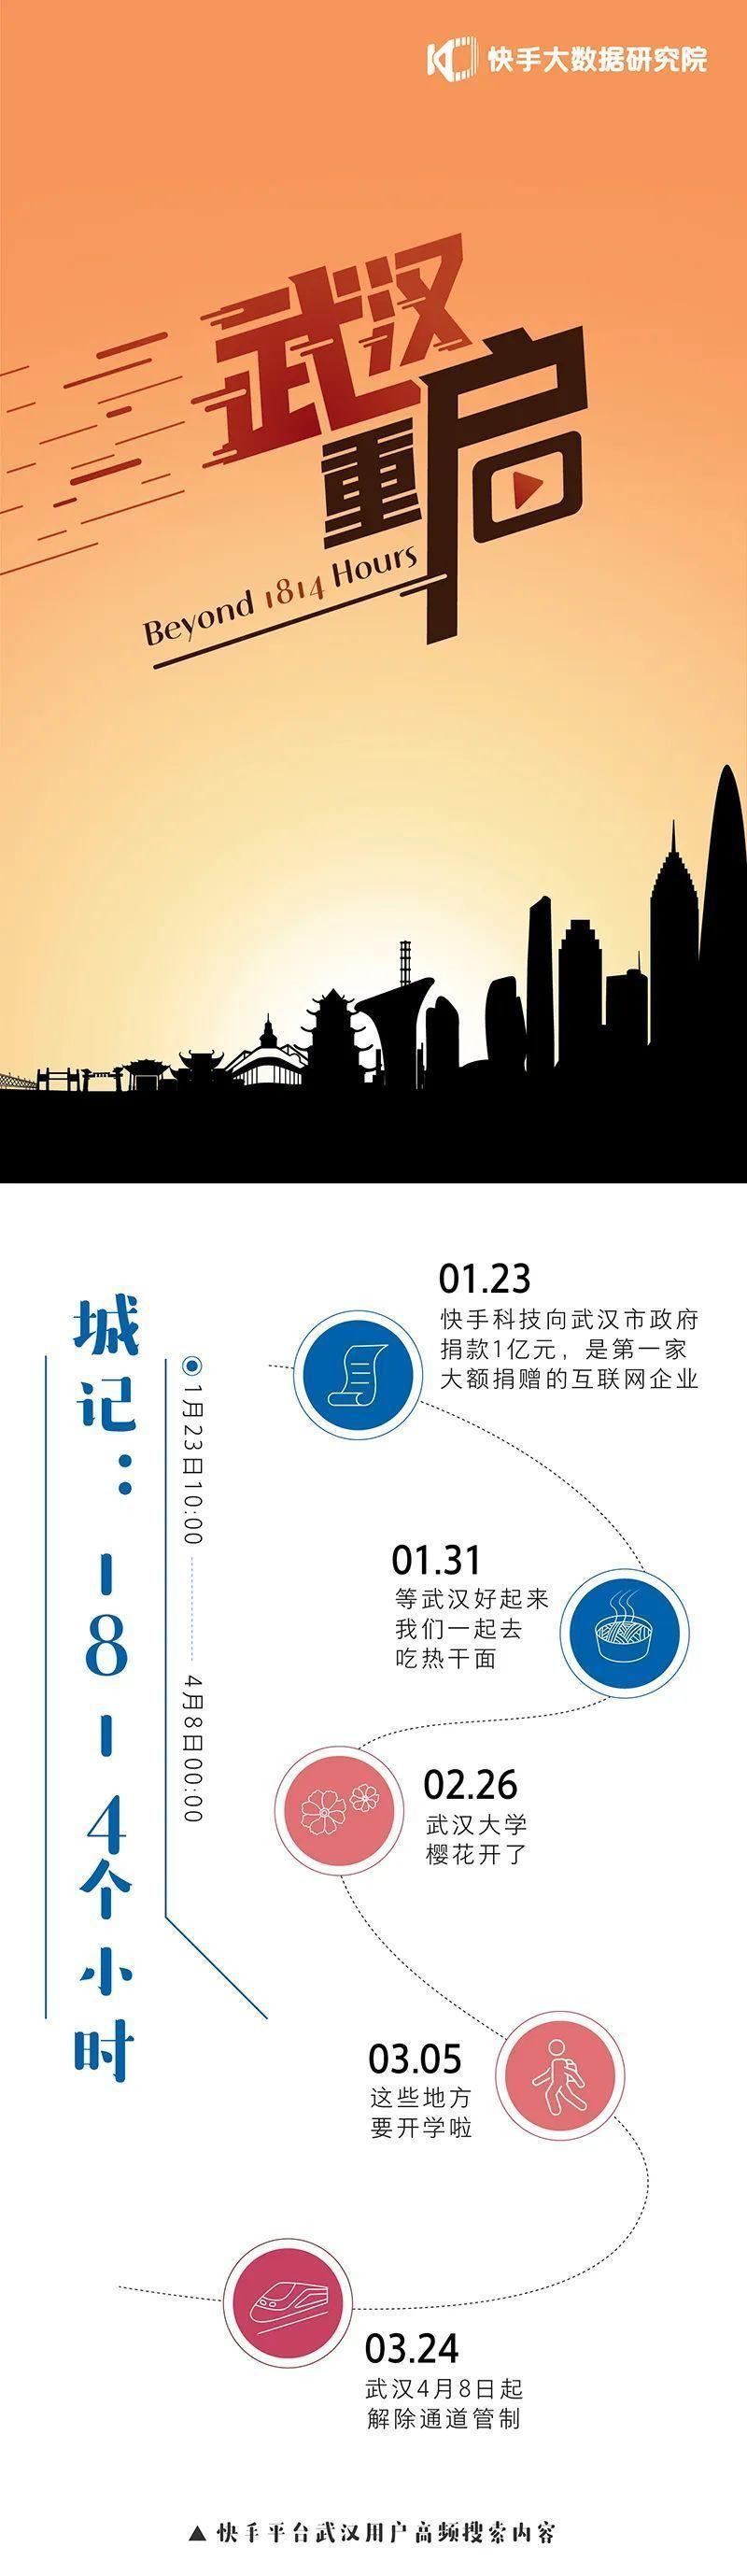 在快手看武汉重启：武汉老铁说了200万次加油、300万次支持-第1张图片-周小辉博客